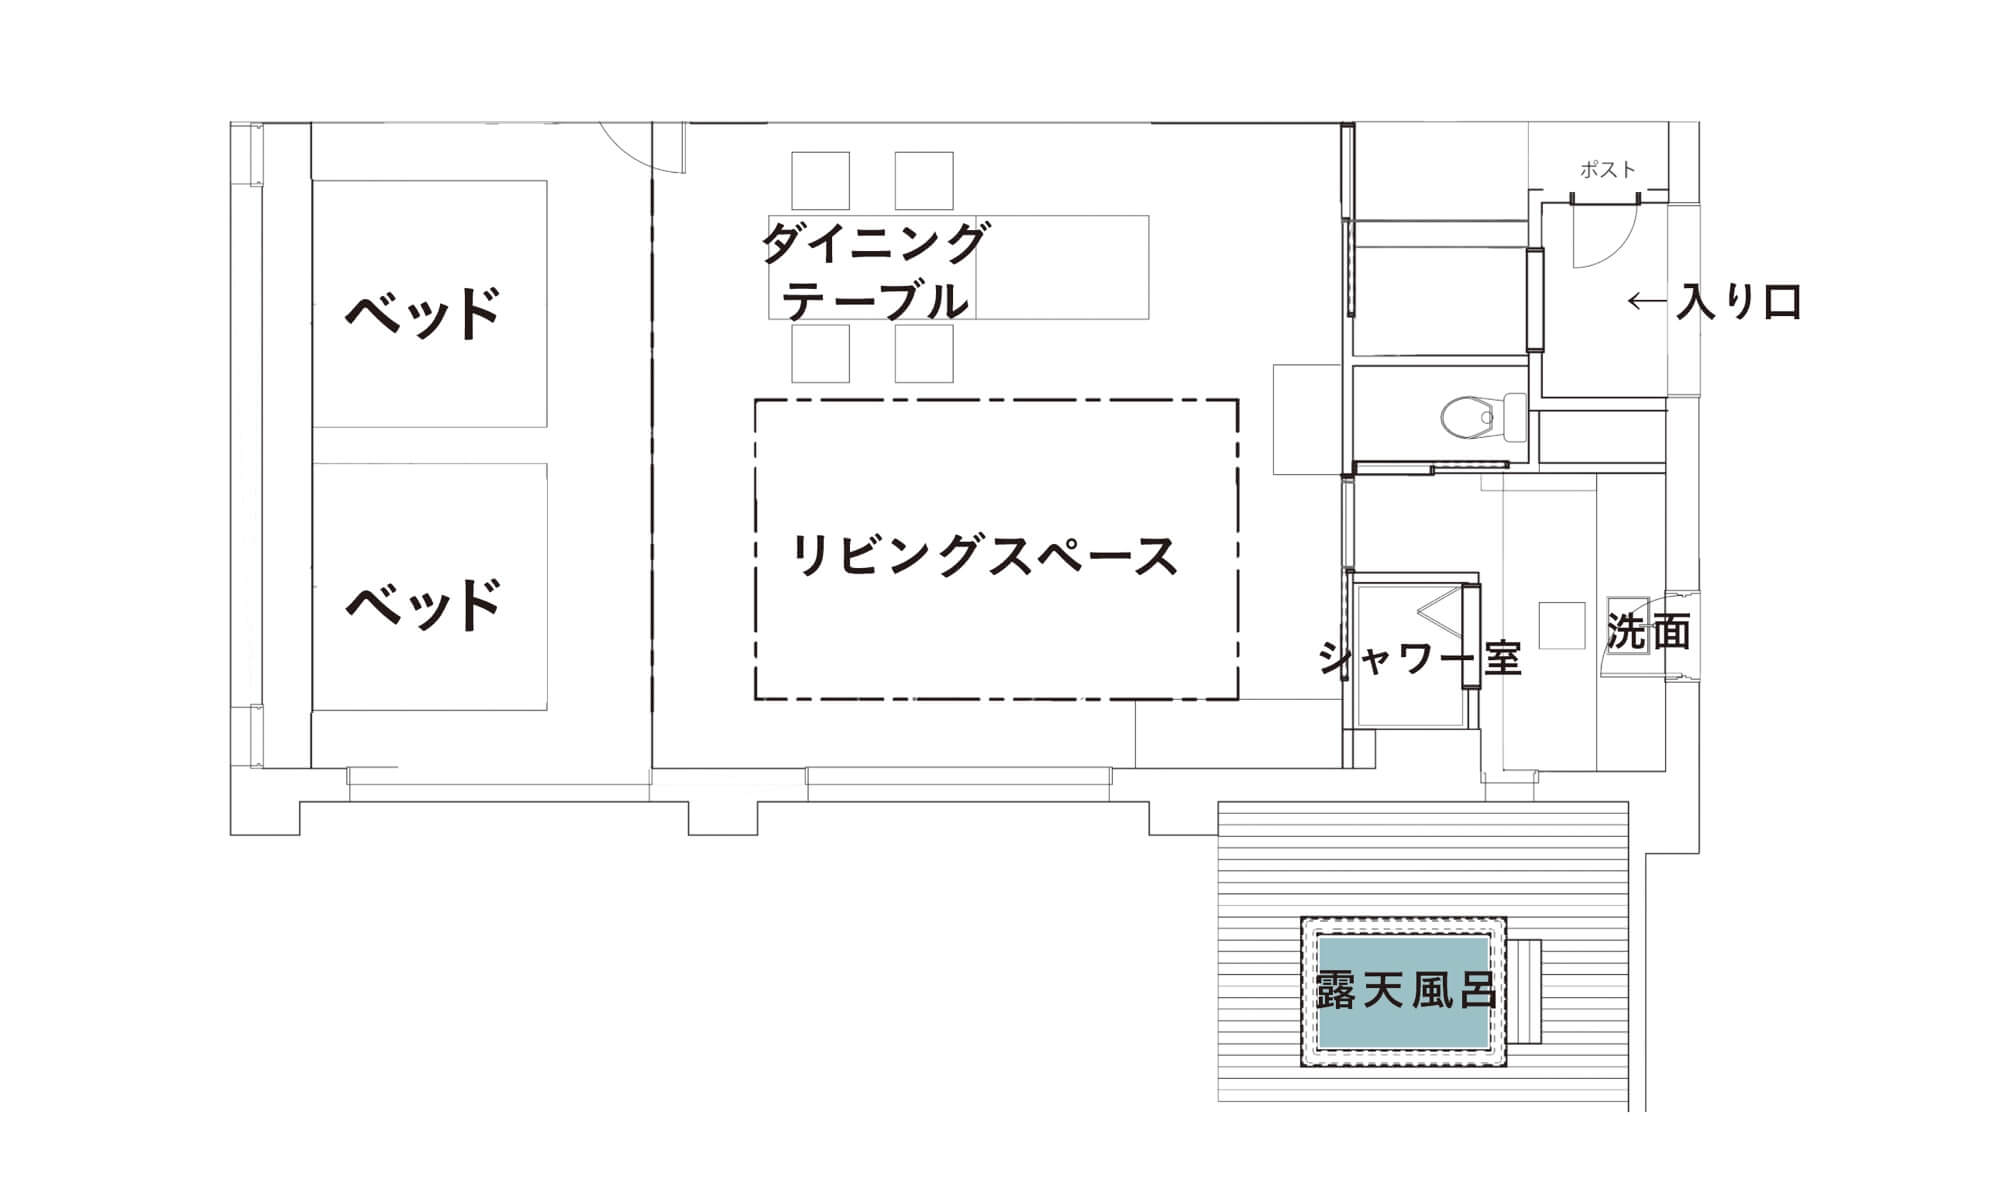 【翠巌スイート】露天風呂付客室「青柳」103号室 平面図